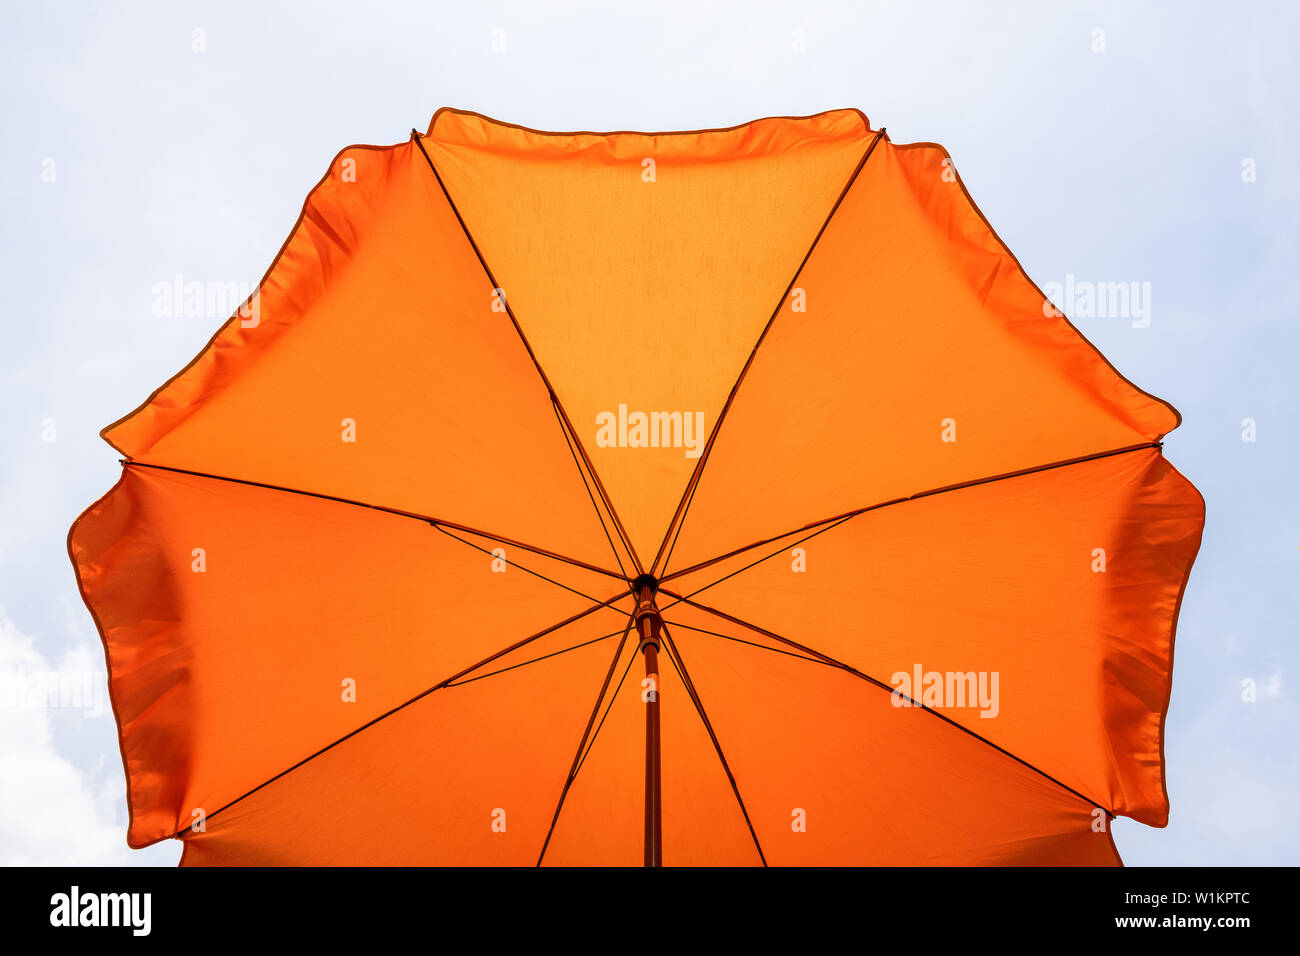 Descripción: foto de una sombrilla en el cielo azul,playa sombrilla.un vibrante color naranja sombrilla contra un intenso azul cielo y nube blanca. Foto de stock